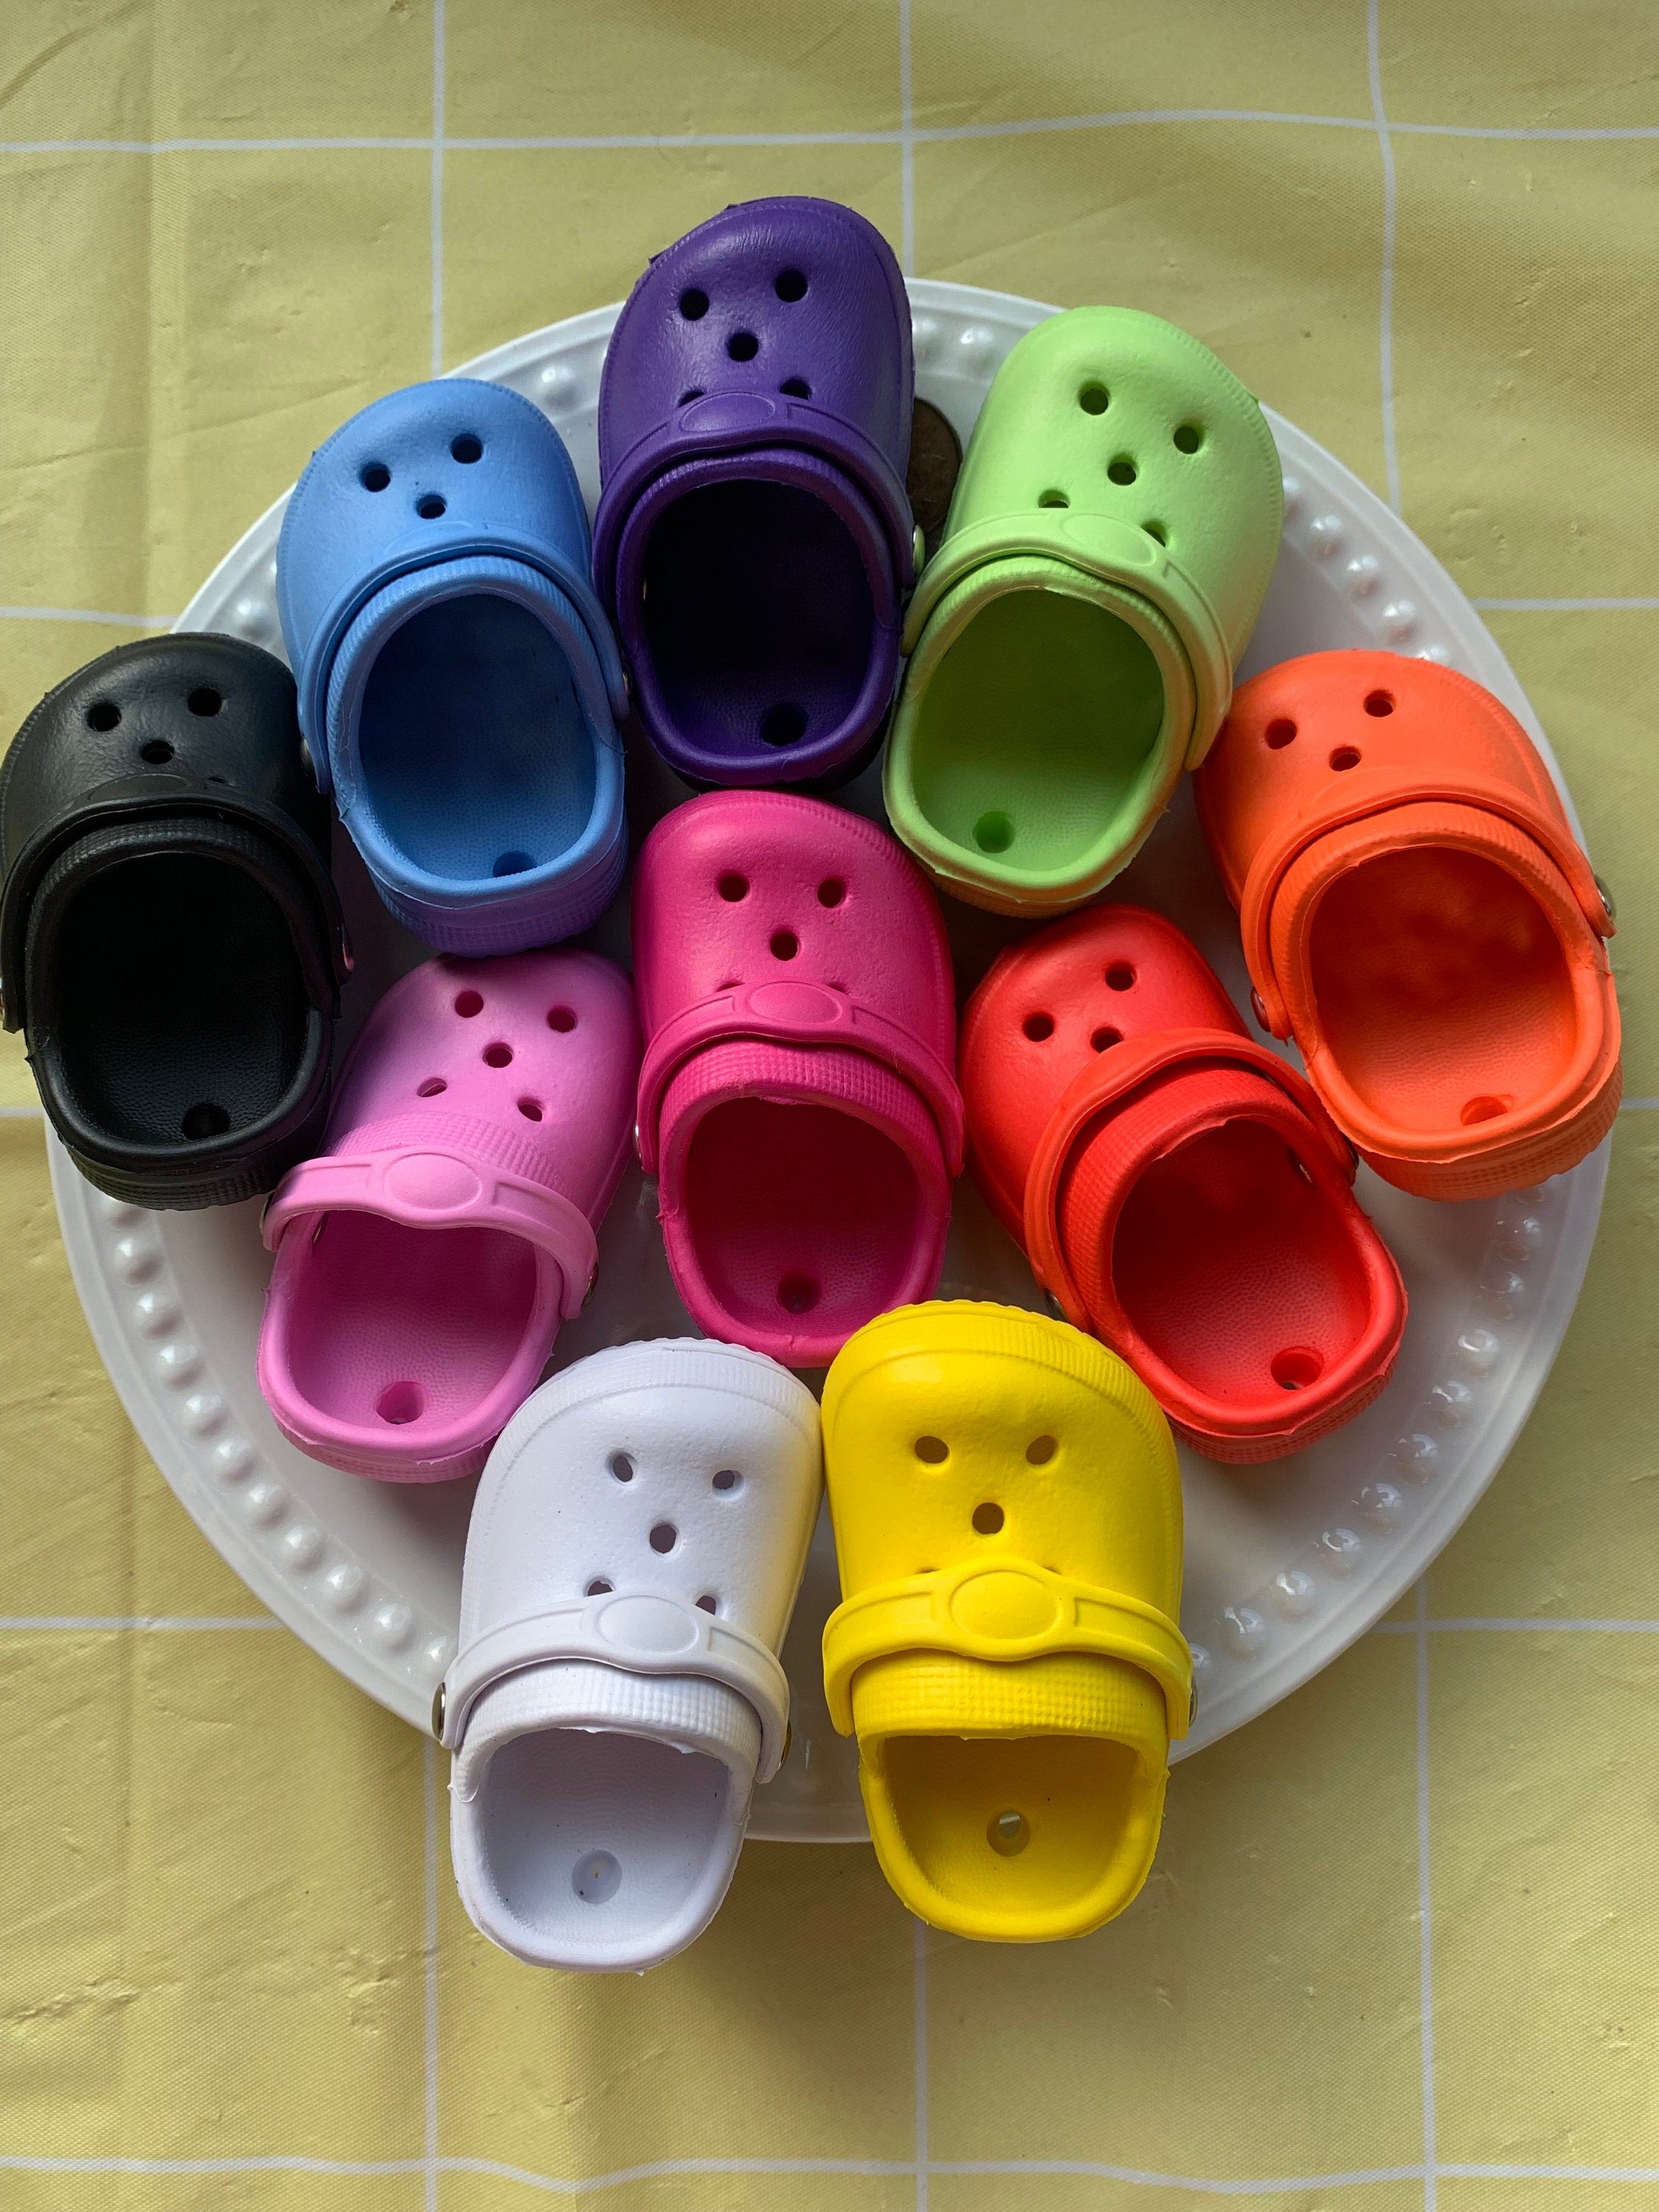 1Pcs Famous Singer Taylor Shoe Charms Accessories Shoe Buckle Decoration  For Croc Jibz Shoes Fans Party Gifts